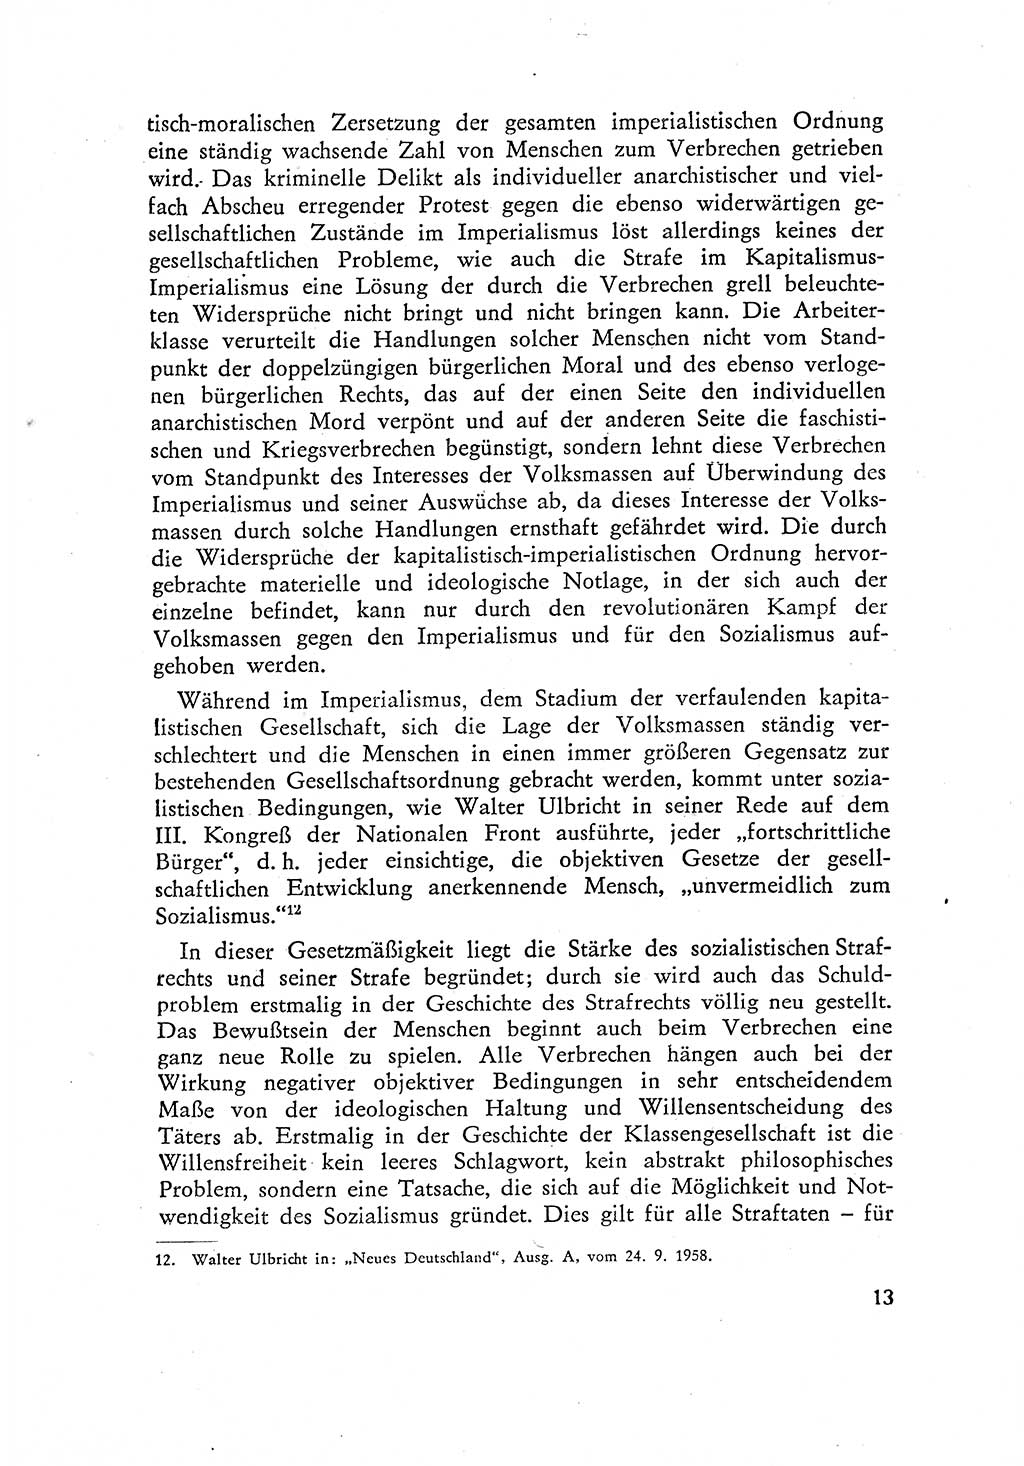 Beiträge zum Strafrecht [Deutsche Demokratische Republik (DDR)] 1959, Seite 13 (Beitr. Strafr. DDR 1959, S. 13)